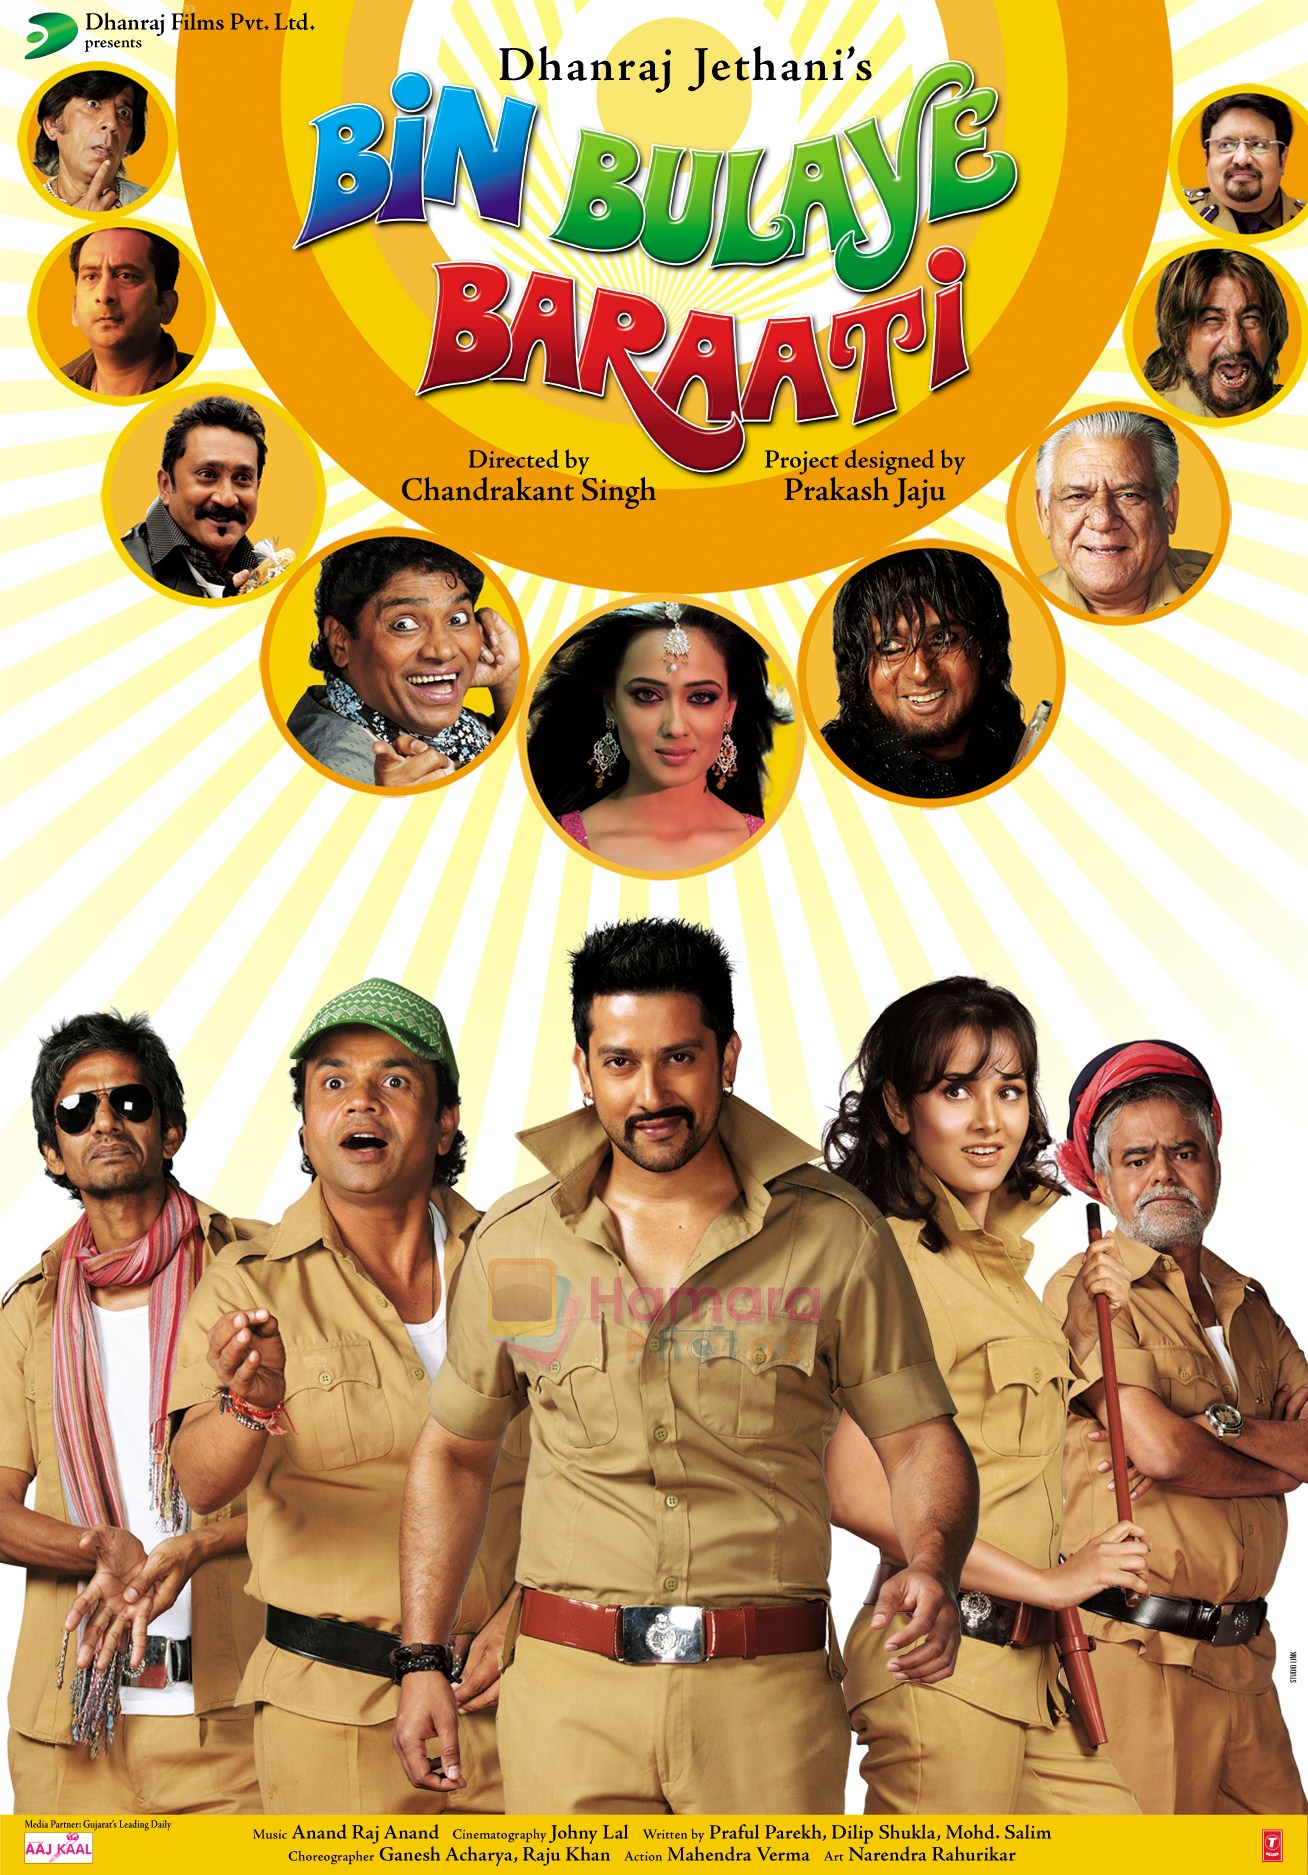 Bin Bulaye Baraati Movie Poster 